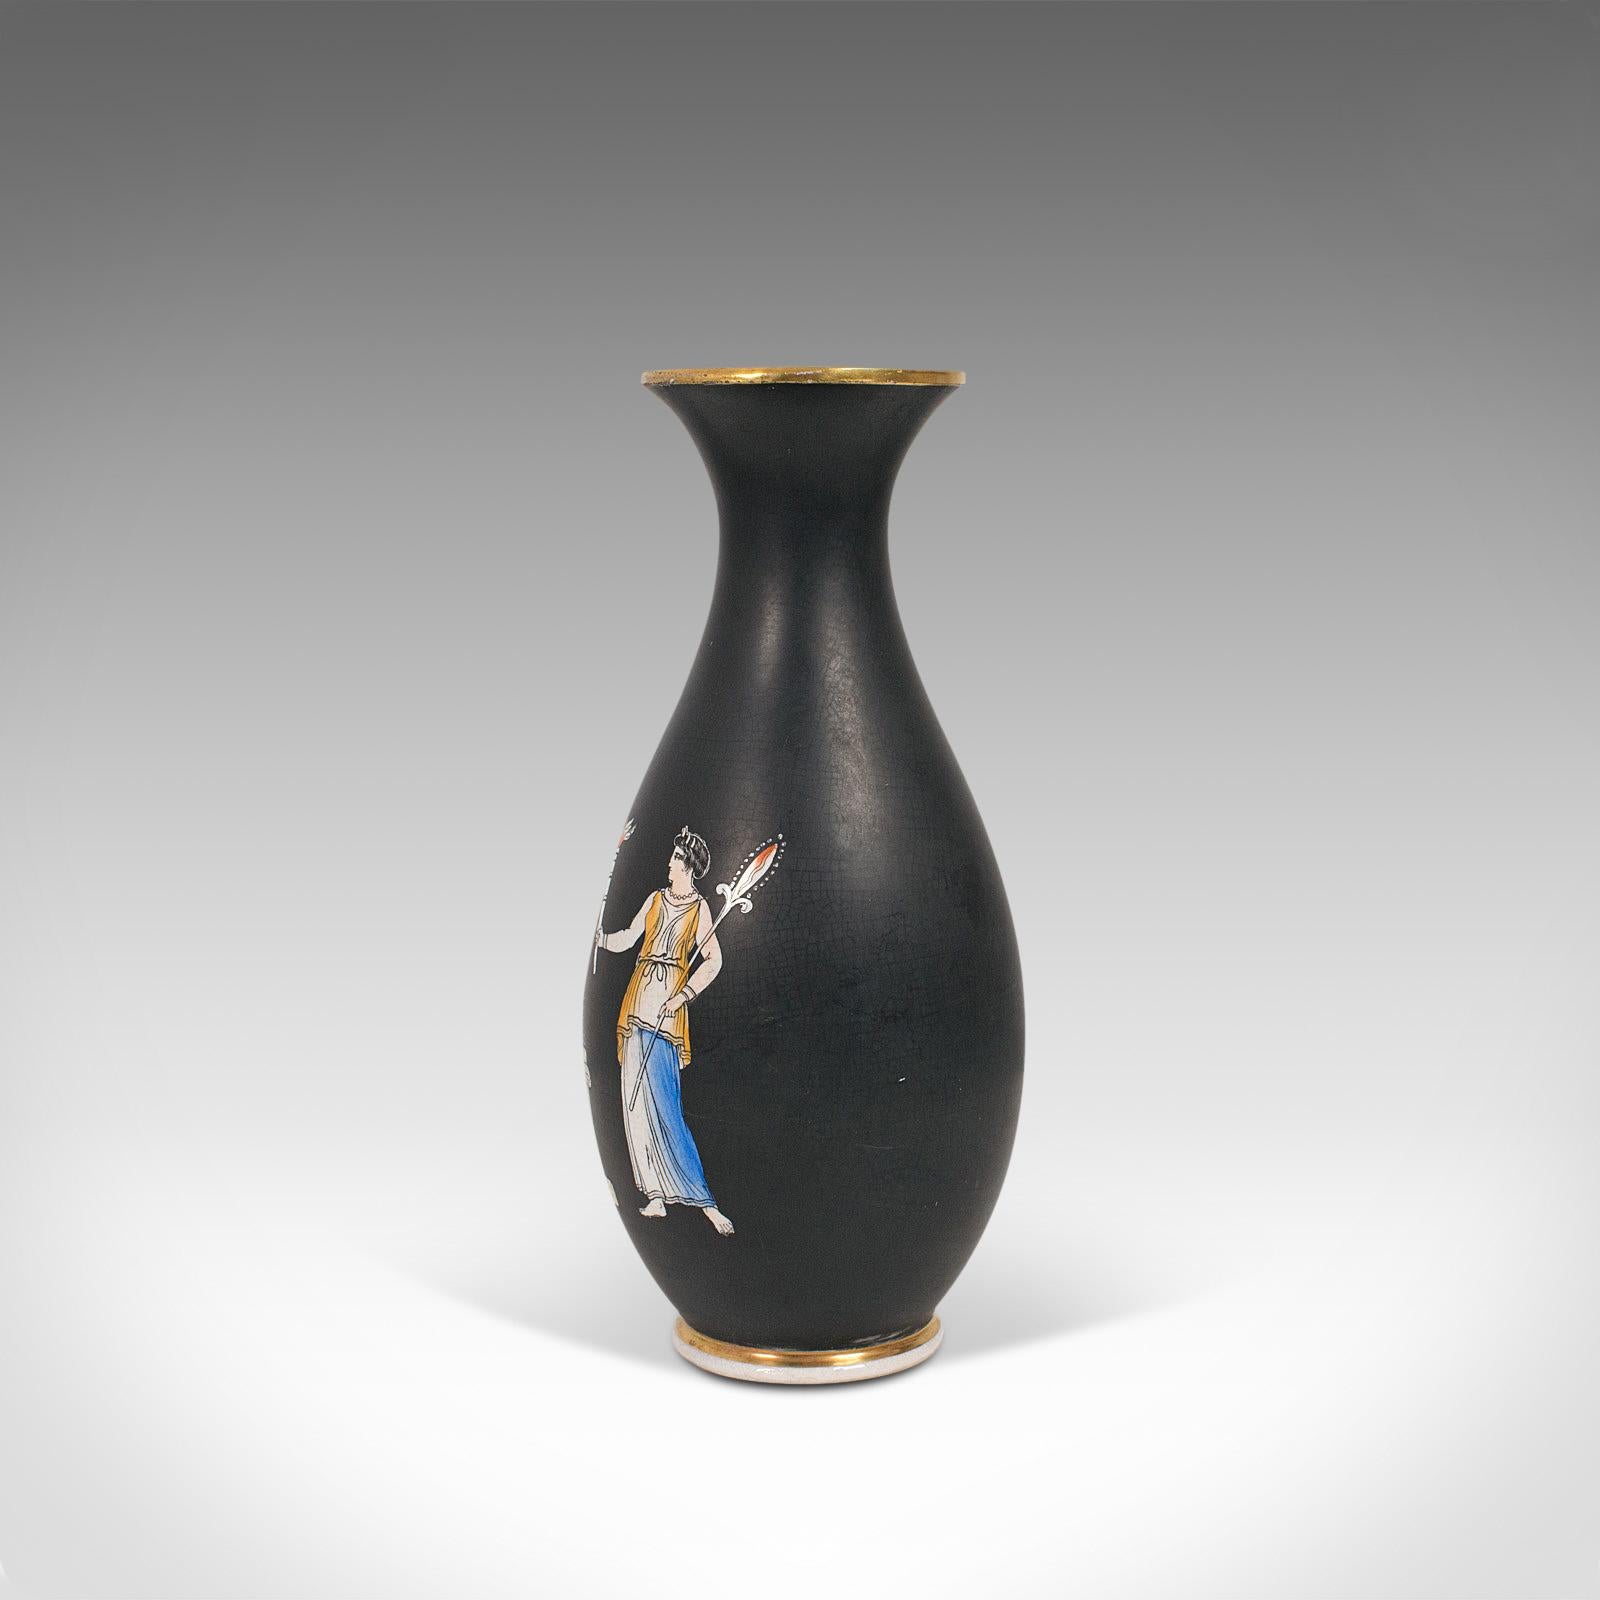 19th Century Antique Decorative Vase, English, Ceramic, Baluster Urn, Neoclassical, Victorian